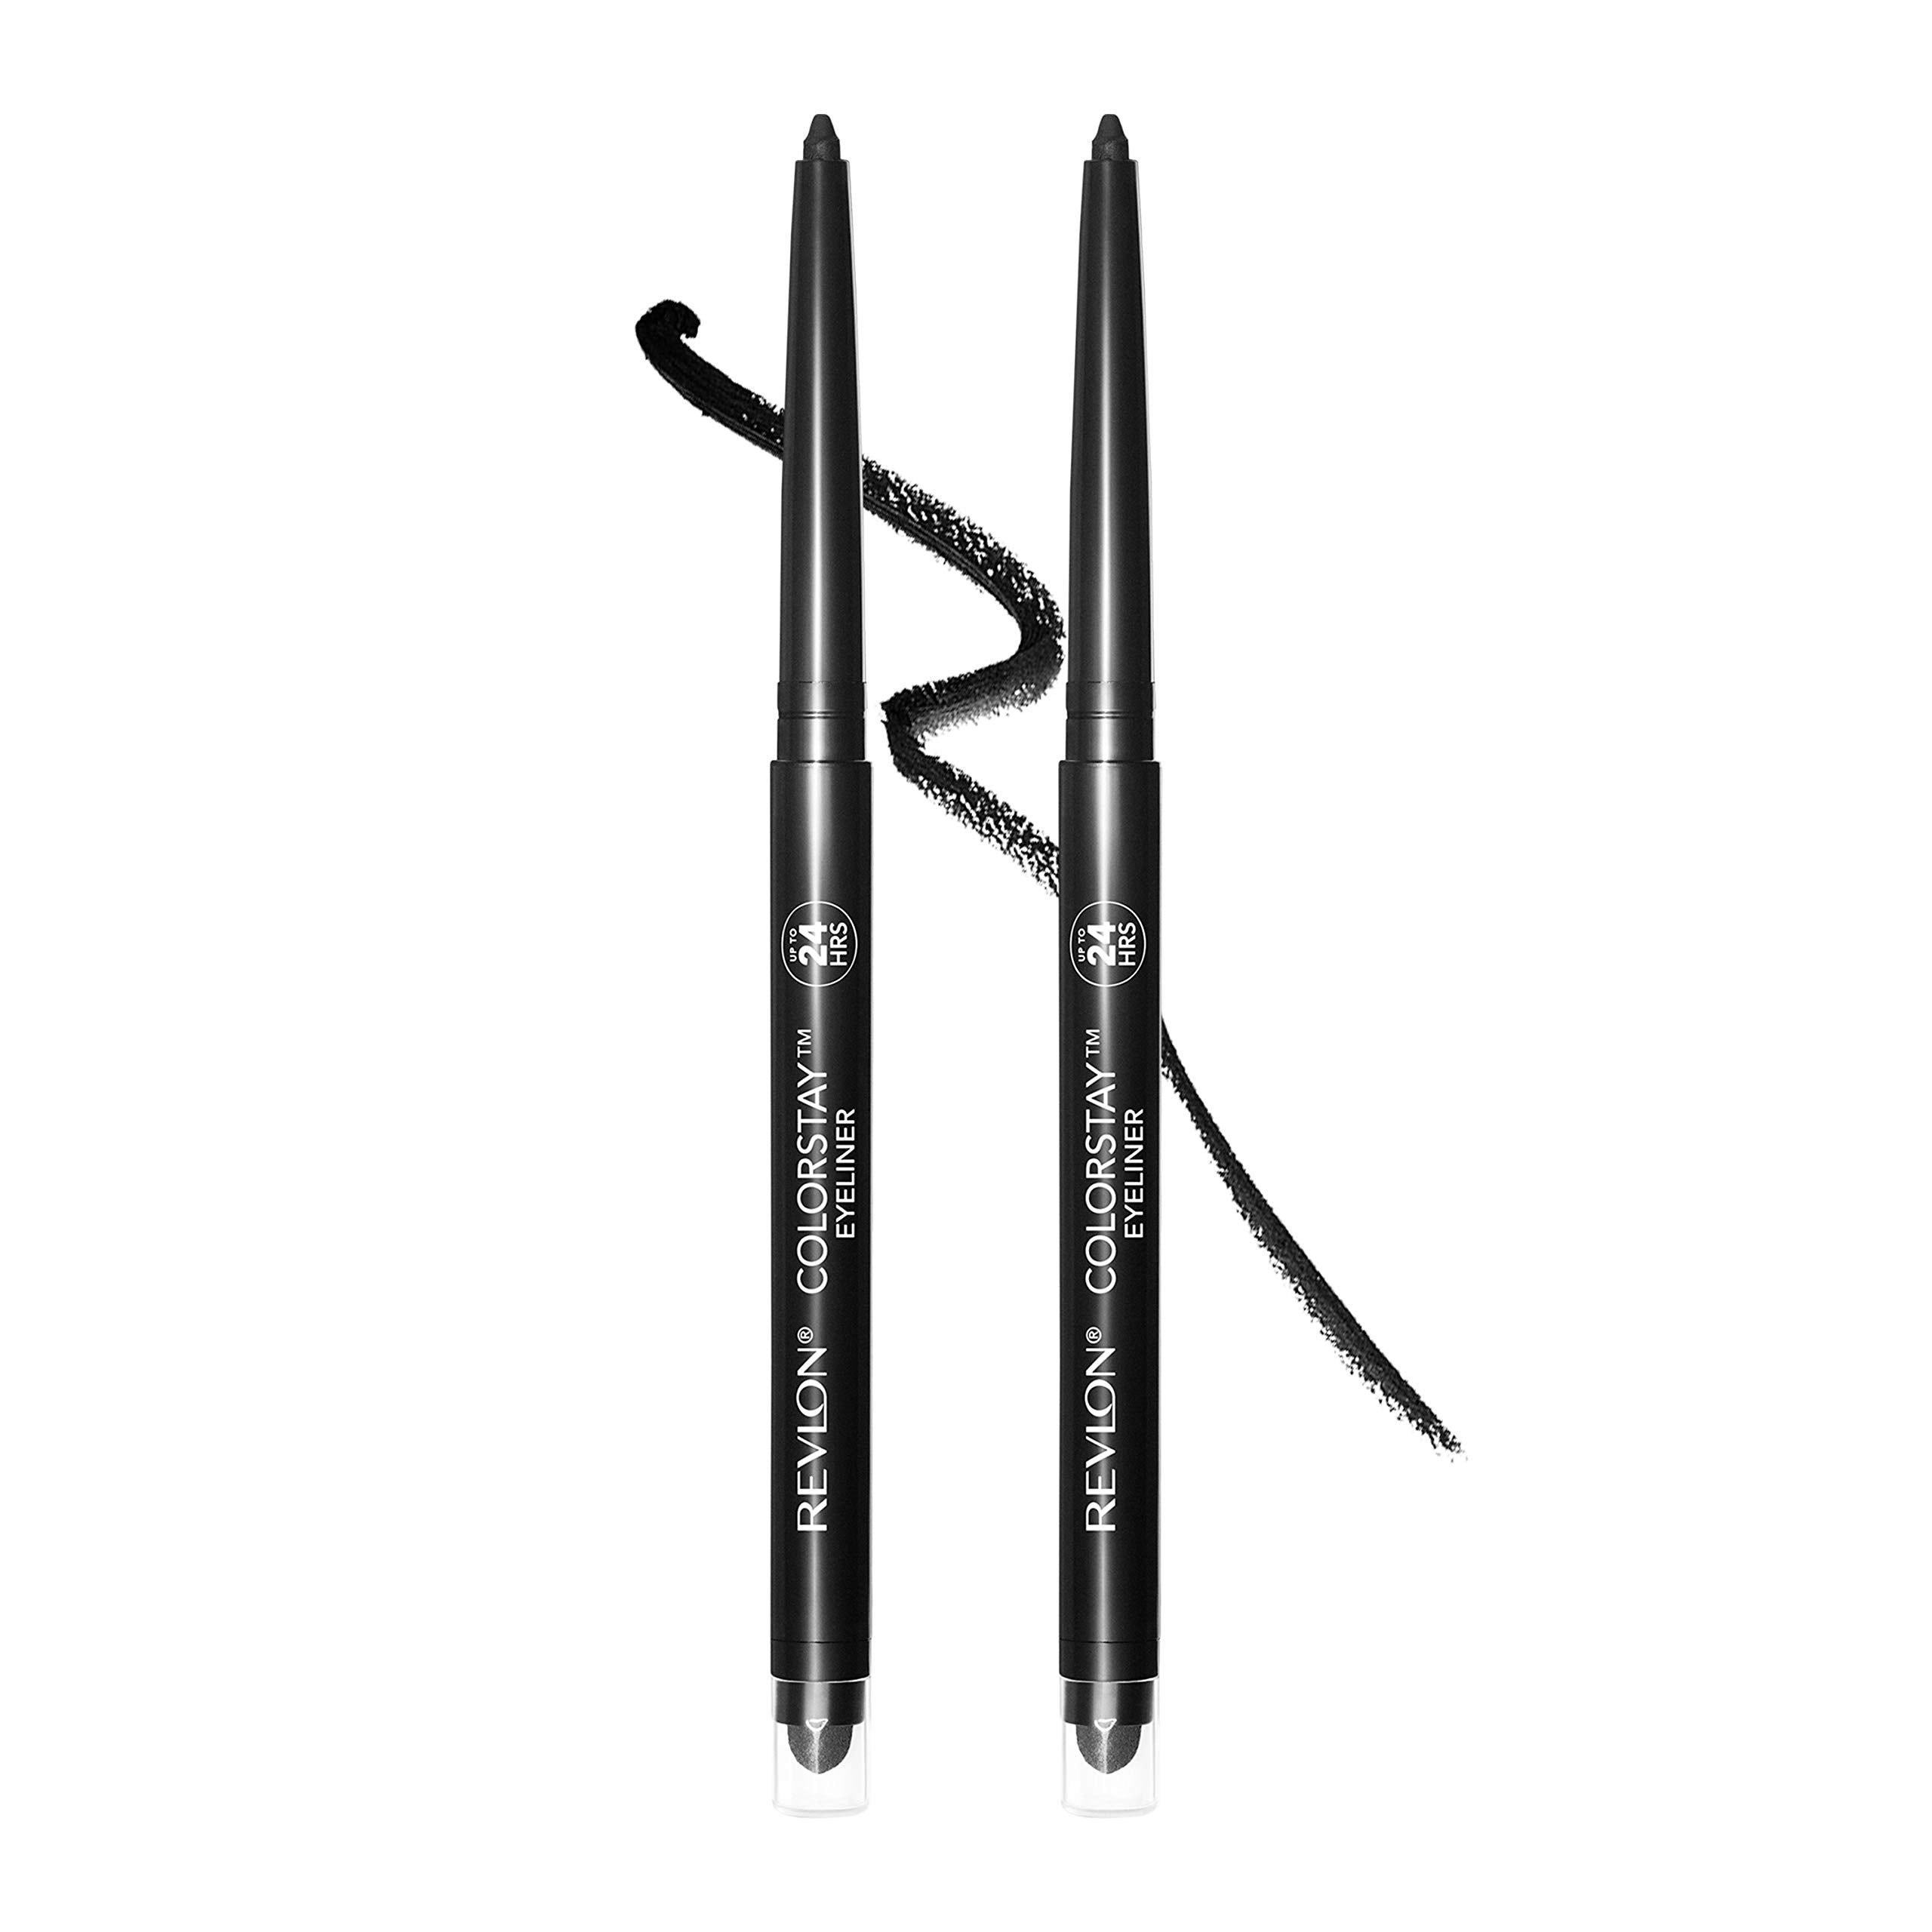 Revlon ColorStay Pencil Eyeliner with Ultra-Fine Tip, 201 Black, 2 PACKS OF 2 (7923791298798)